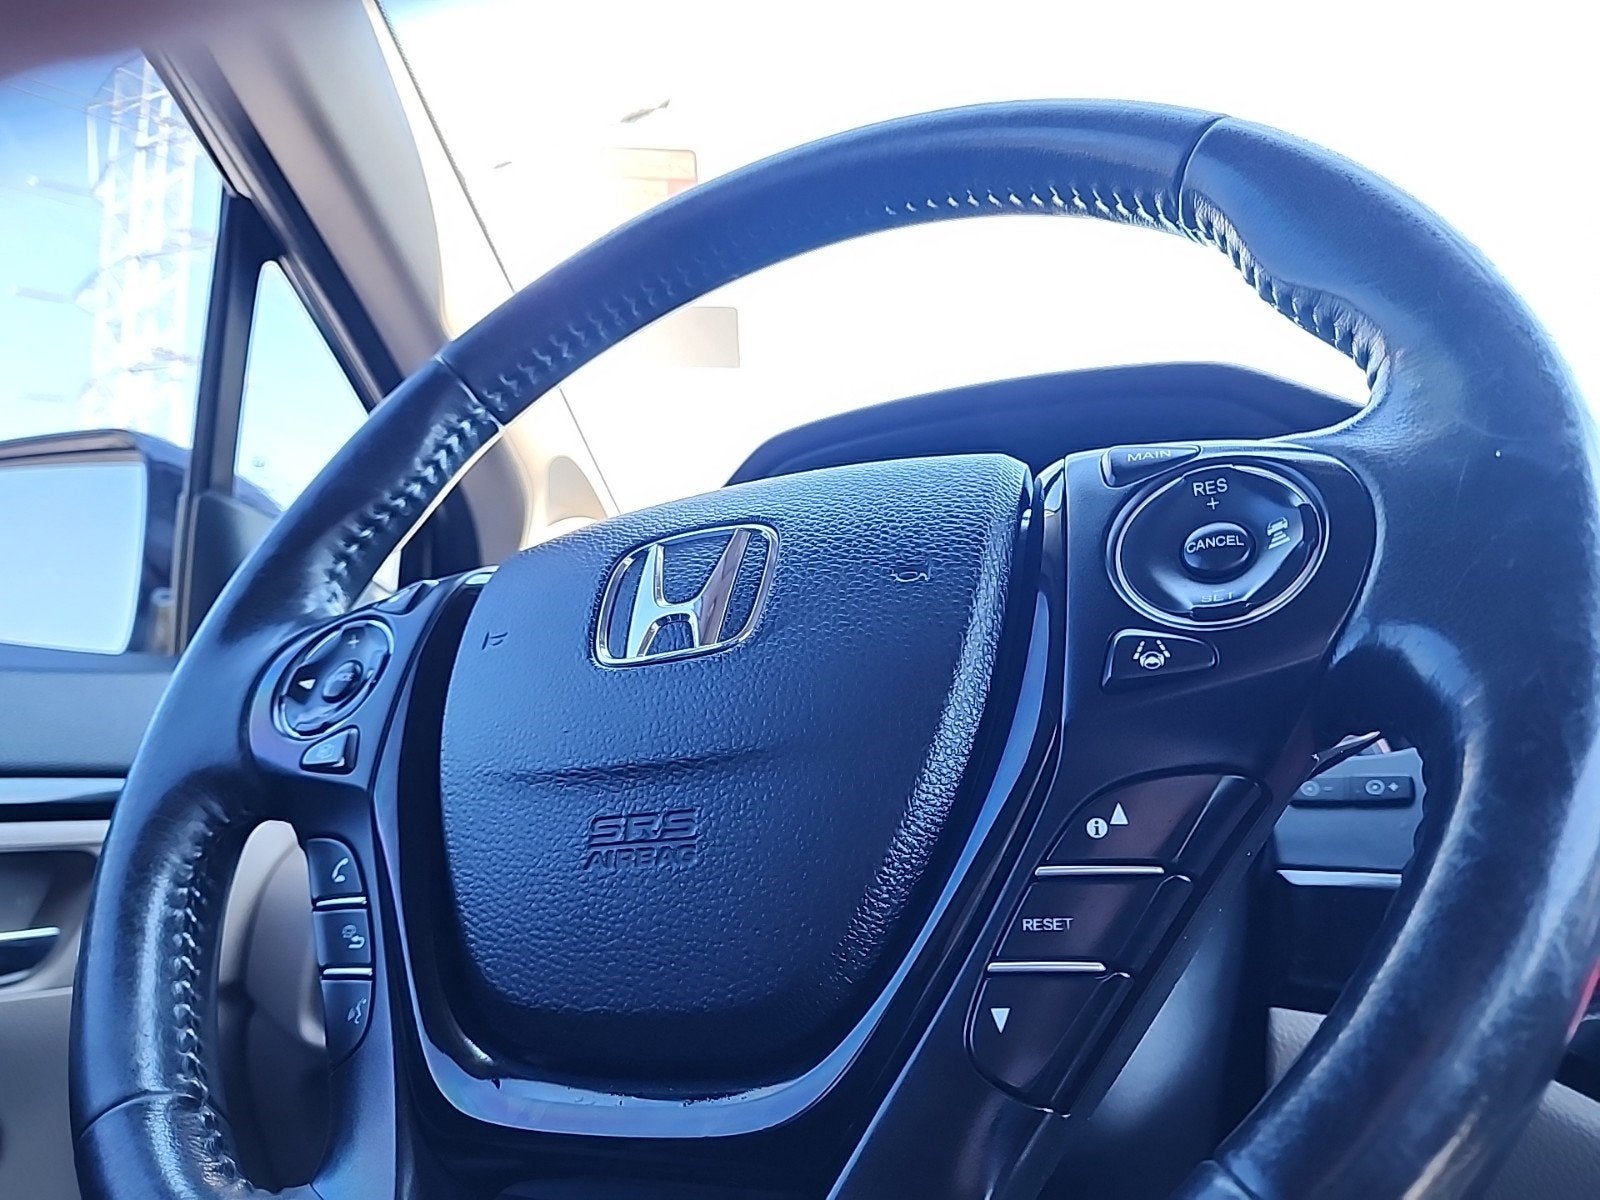 2016 Honda Pilot Touring